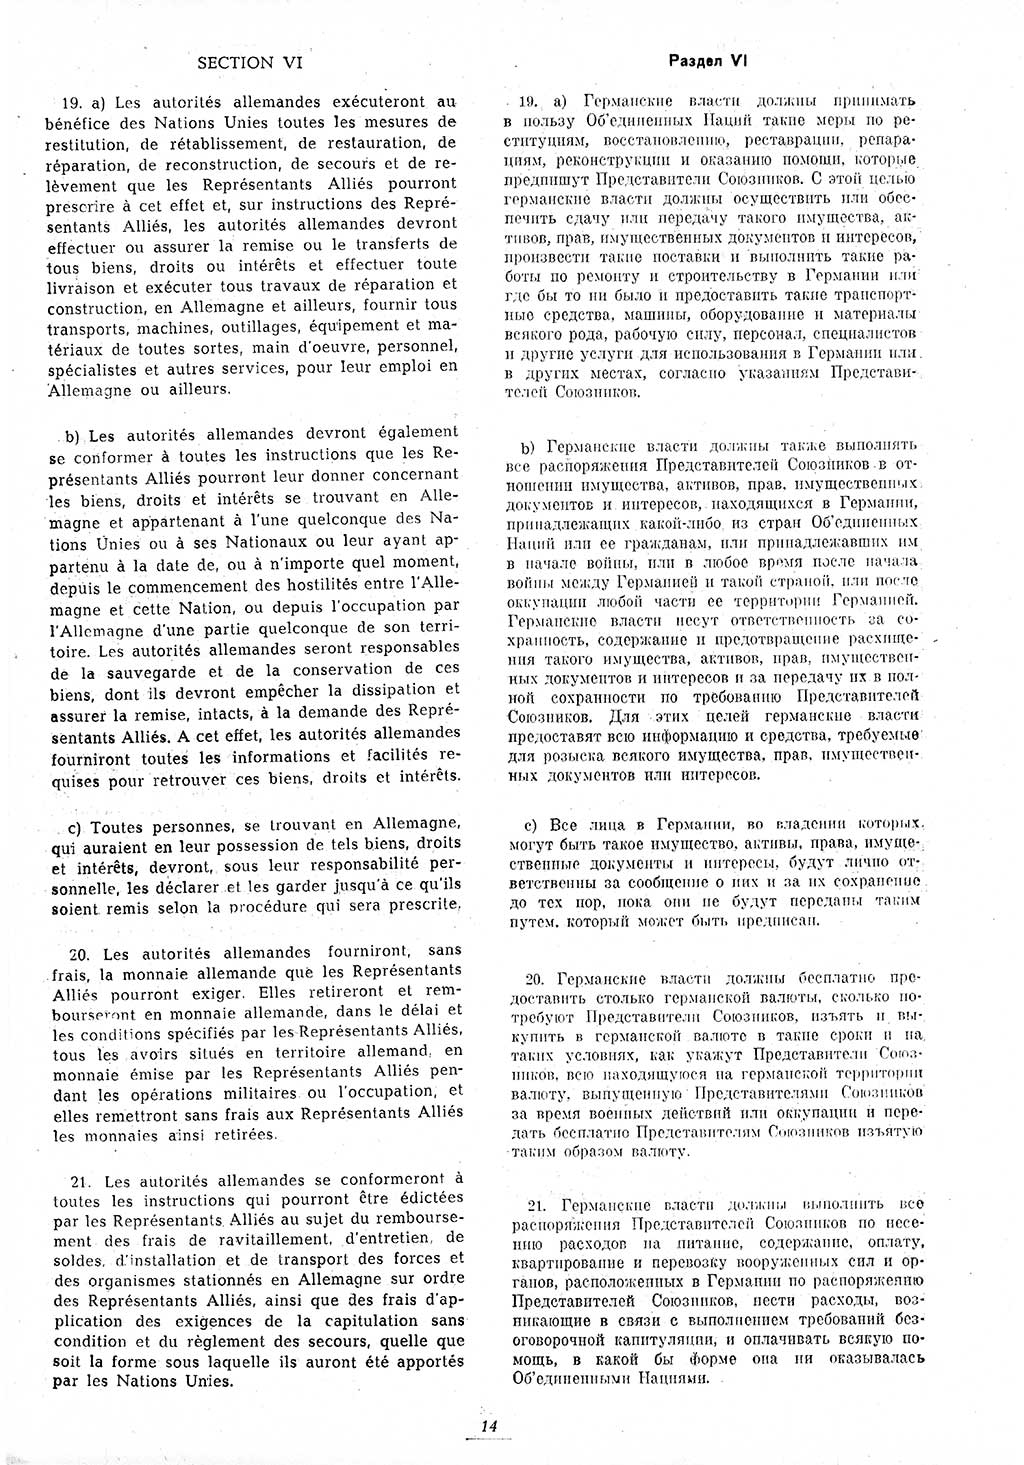 Amtsblatt des Kontrollrats (ABlKR) in Deutschland 1945, Seite 14/1 (ABlKR Dtl. 1945, S. 14/1)